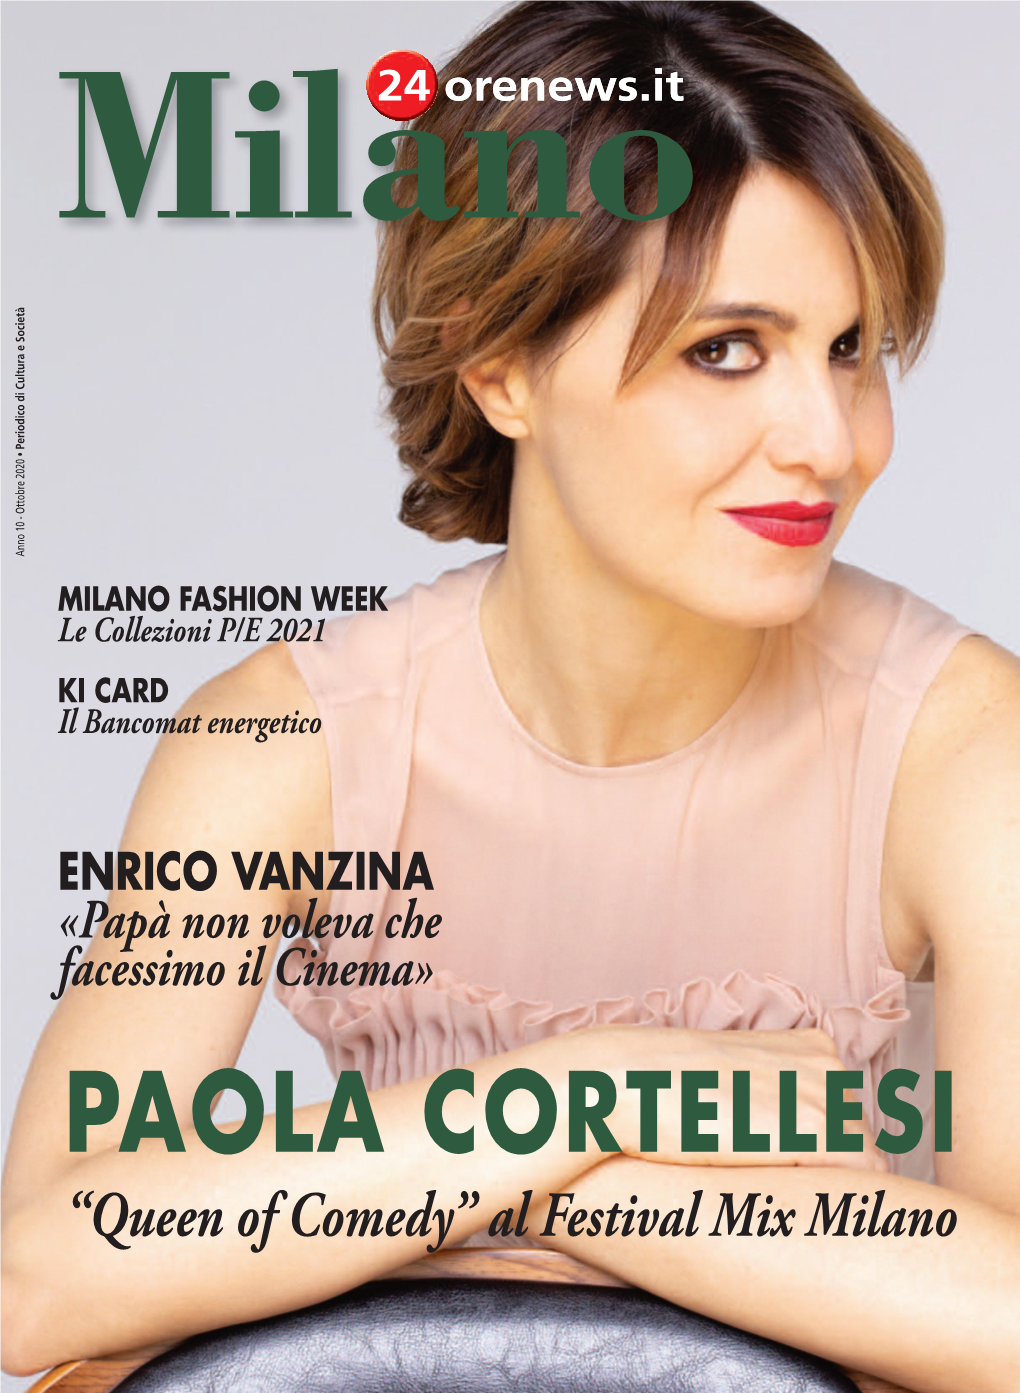 PAOLA CORTELLESI “Queen of Comedy” Al Festival Mix Milano